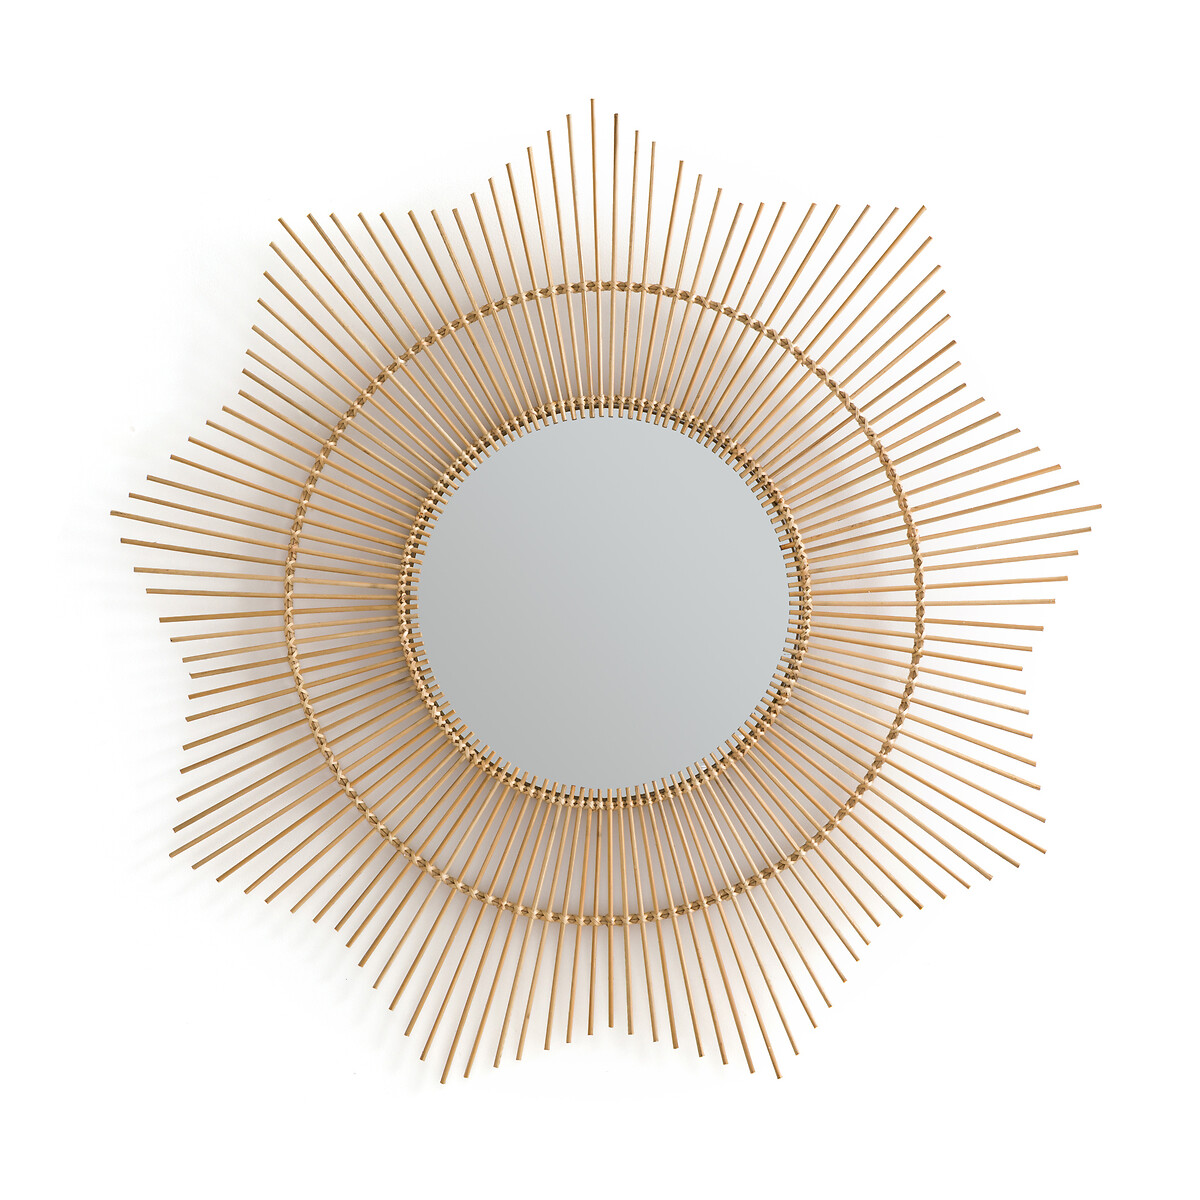 Зеркало LA REDOUTE INTERIEURS Из бамбука в форме солнца 90 см Nogu единый размер бежевый - фото 1